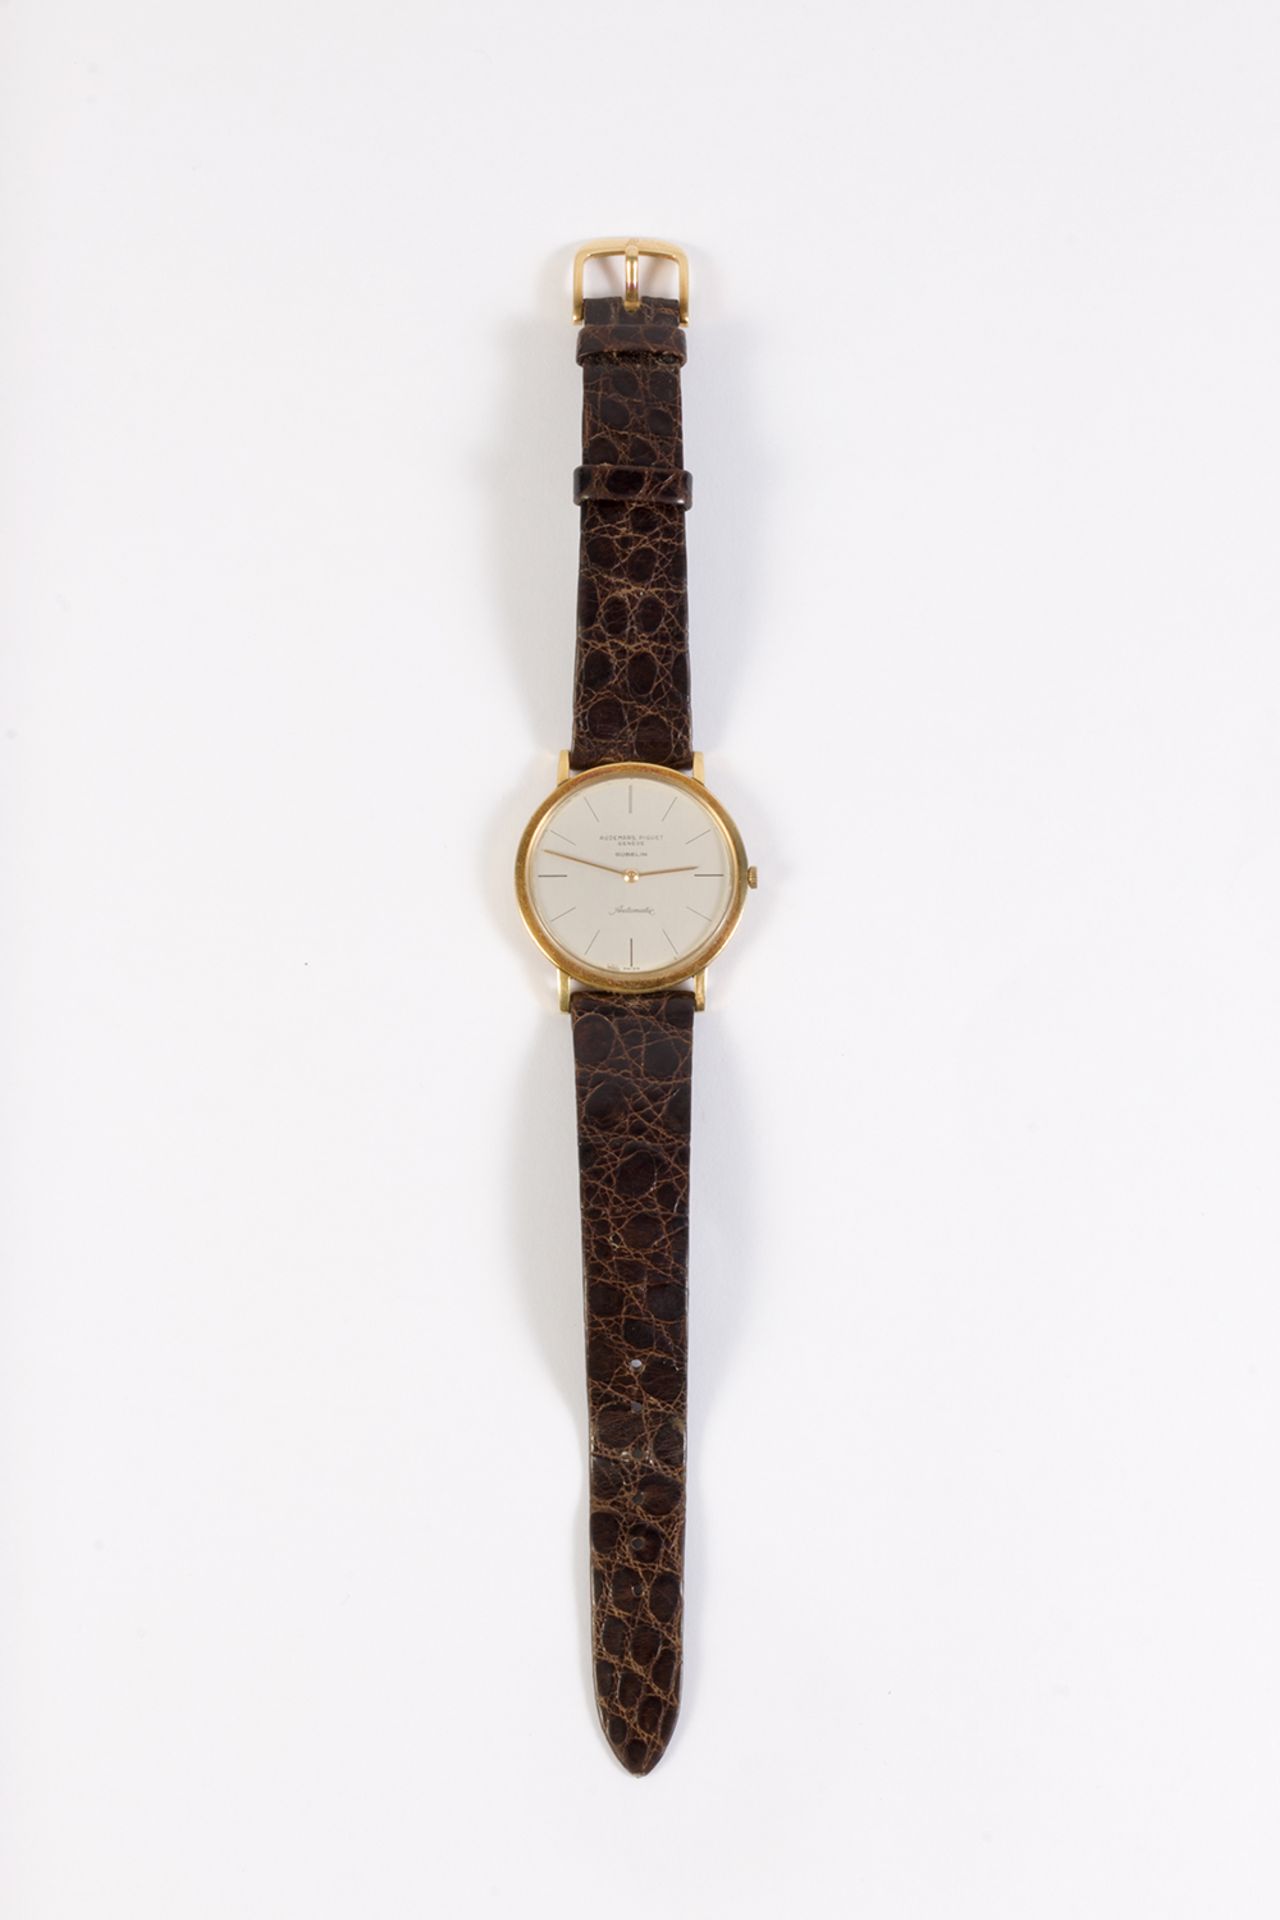 Reloj de pulsera Audemars Piguet, modelo Gübelin, en oro y correa de piel. - Image 2 of 6